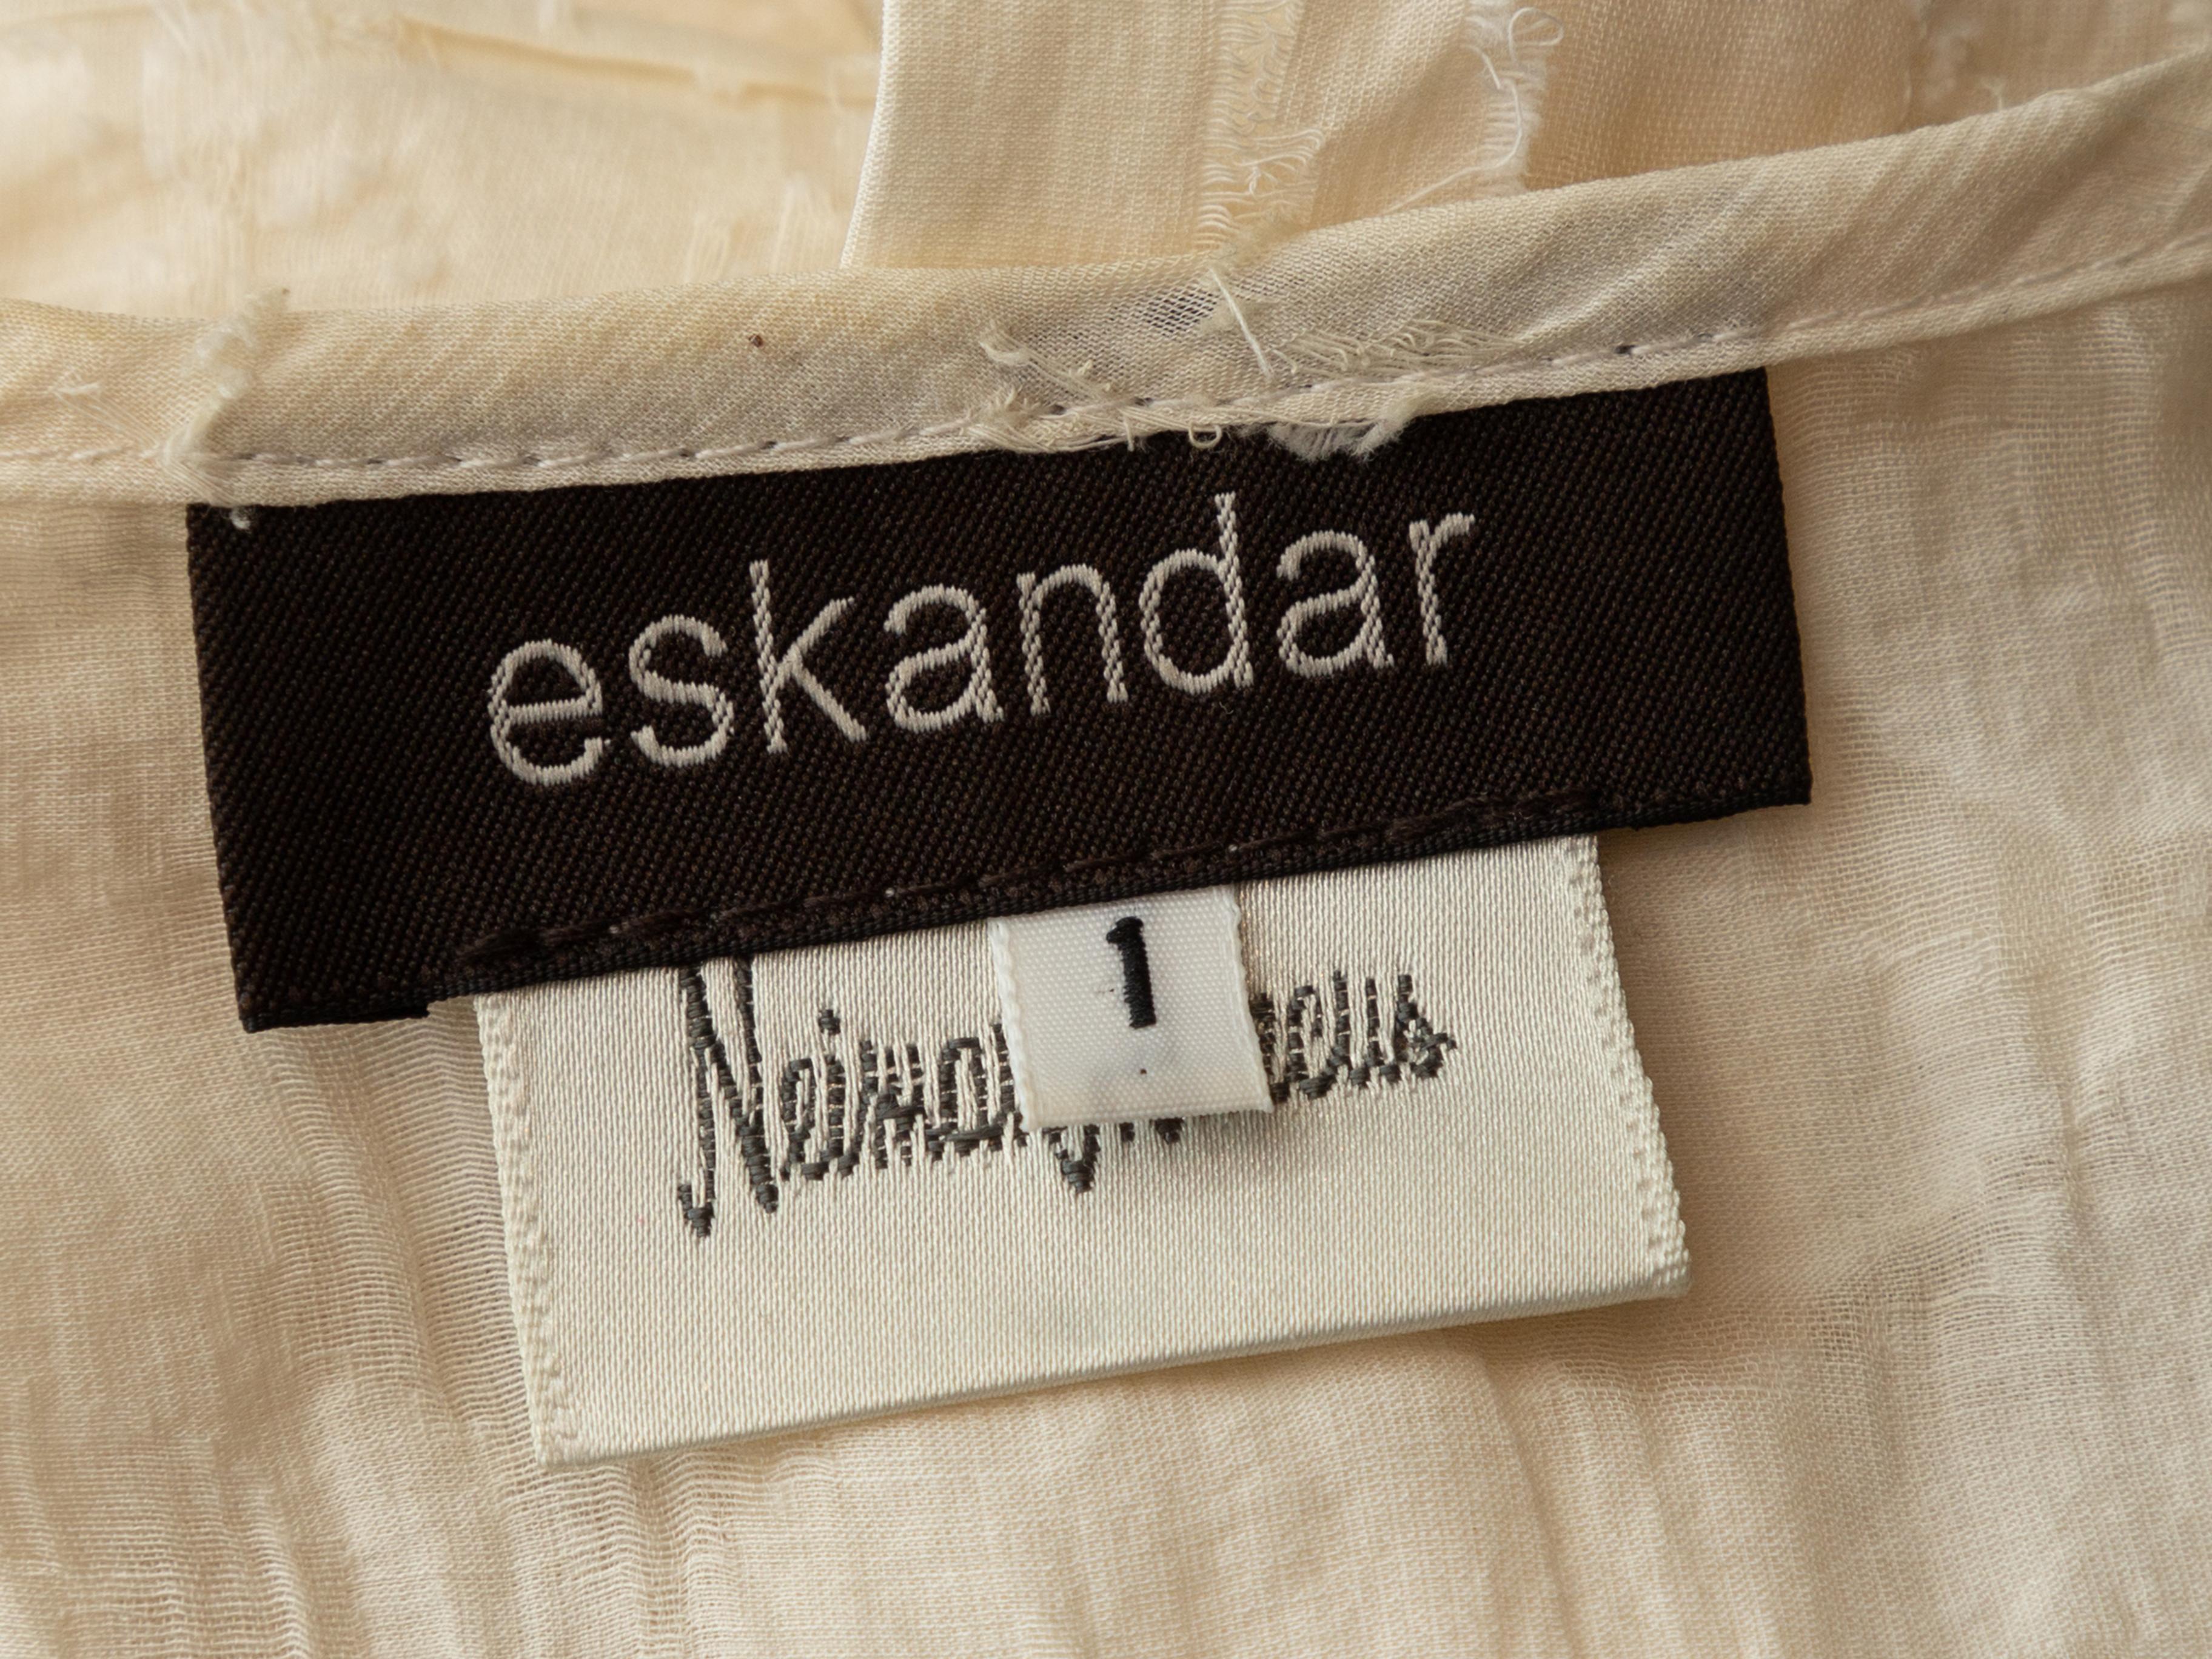 Women's Eskandar White Floral Patterned Button-Up Top